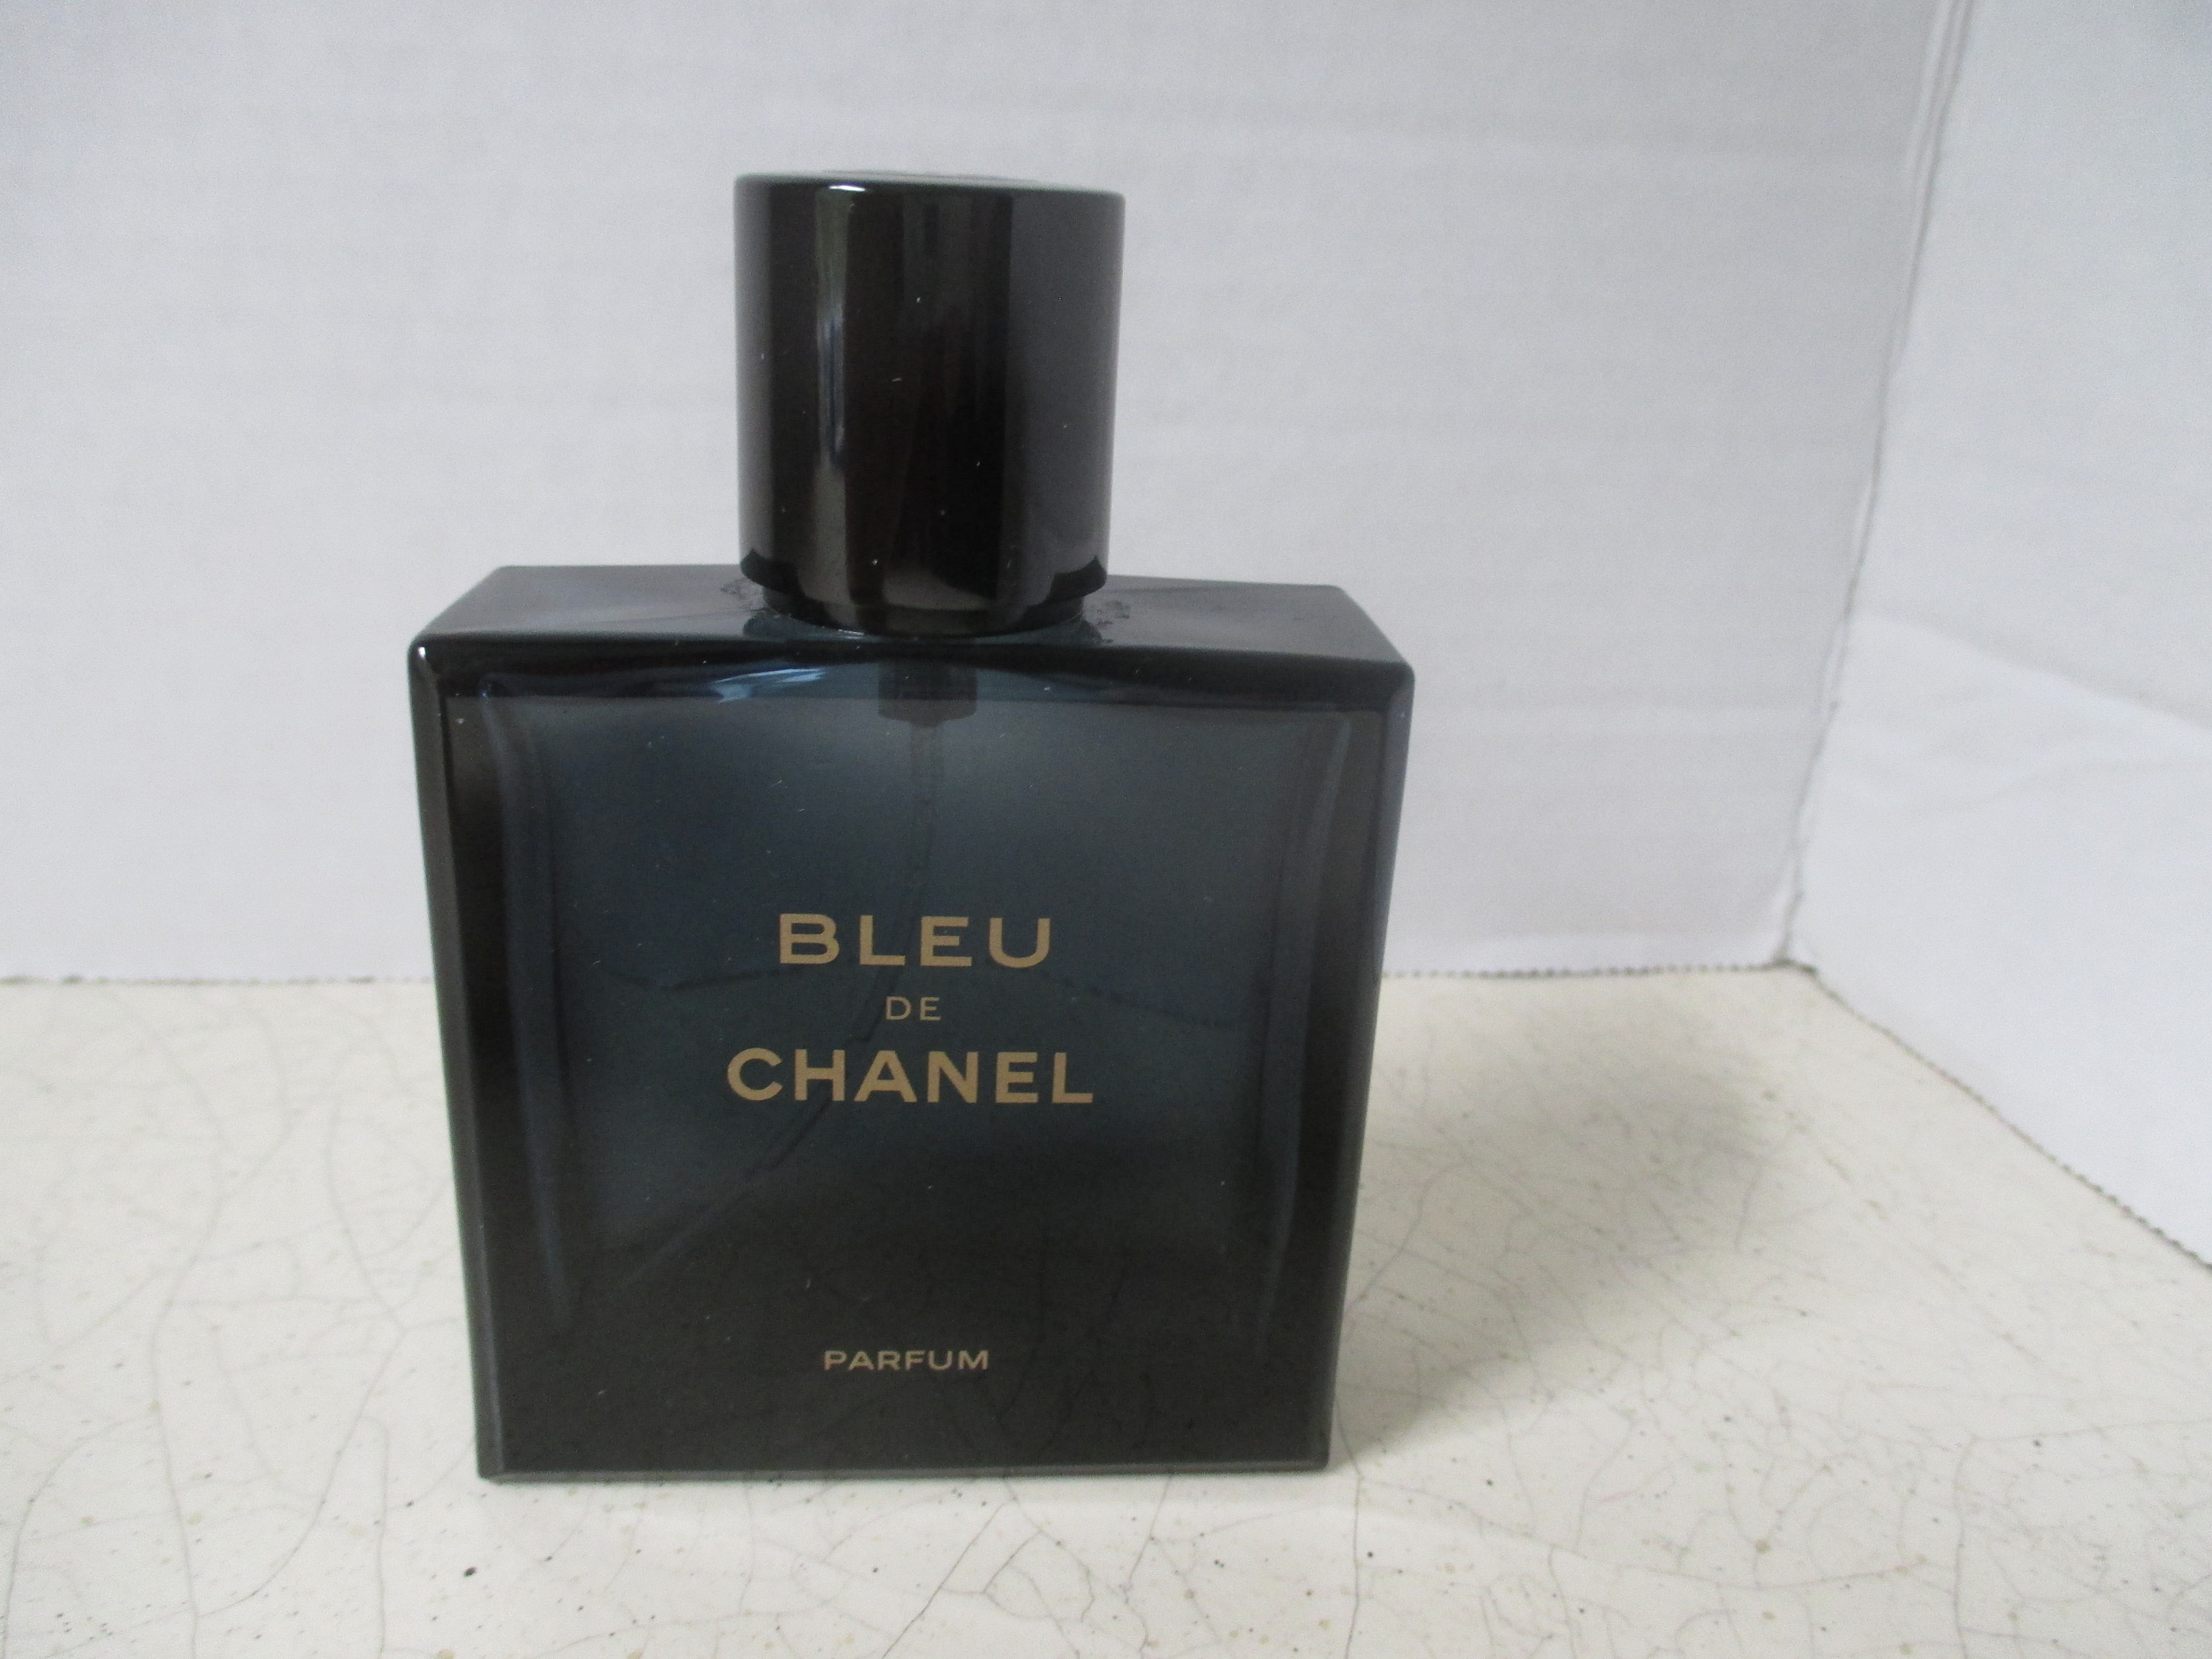 Chanel Bleu De Chanel Parfum Bottle Glass 7 Oz Empty EUC 